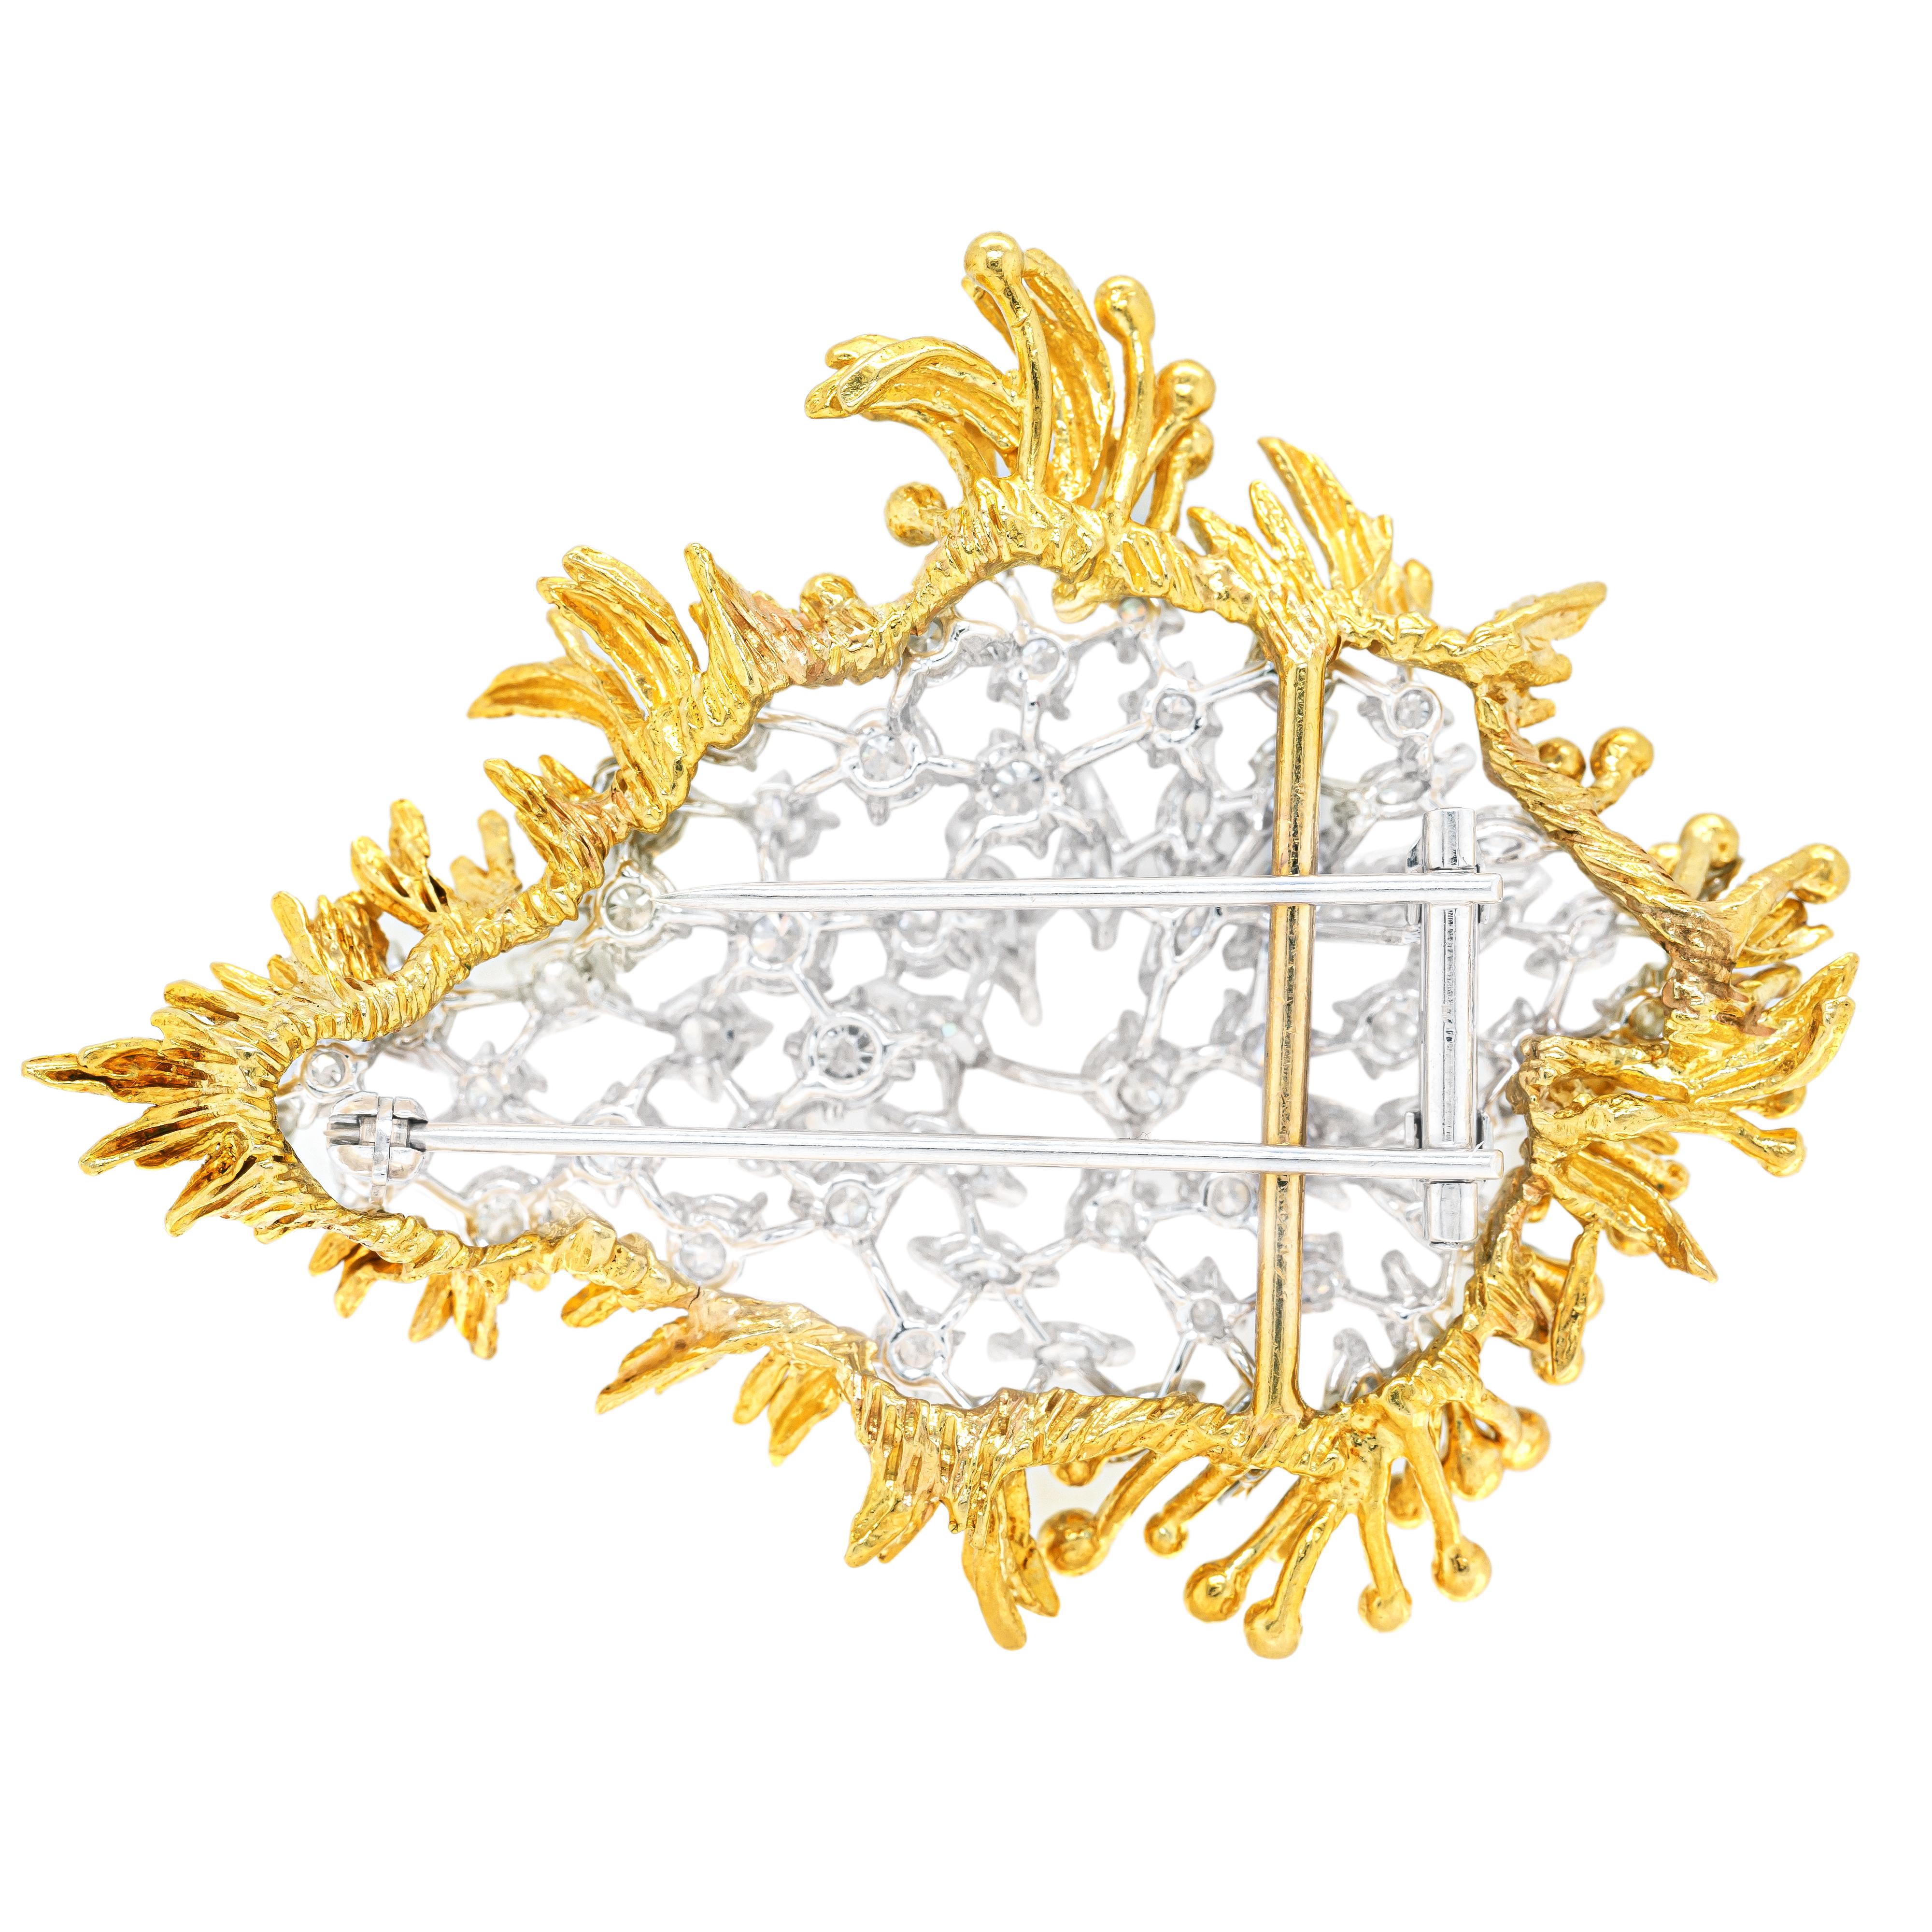 Cette magnifique broche détachable unique en son genre est incrustée d'un mélange de 22 diamants de forme marquise et de 40 diamants ronds de taille brillant, tous minutieusement sertis sur une base en or blanc 18 carats. Le centre exquis de la